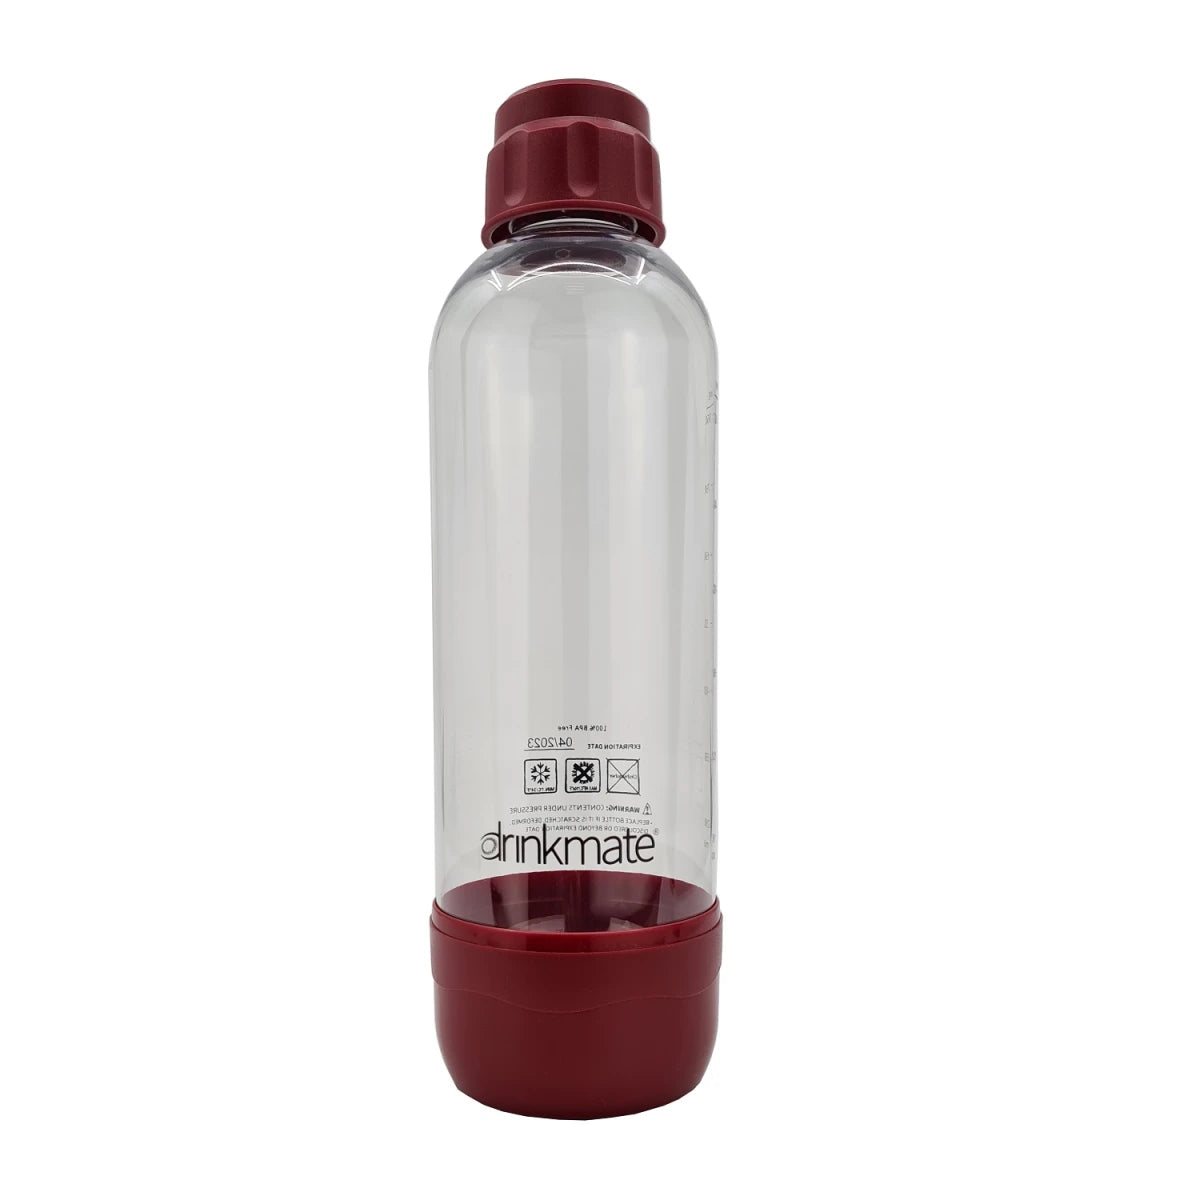 Drinkmate Carbonation Bottles - 1Pack